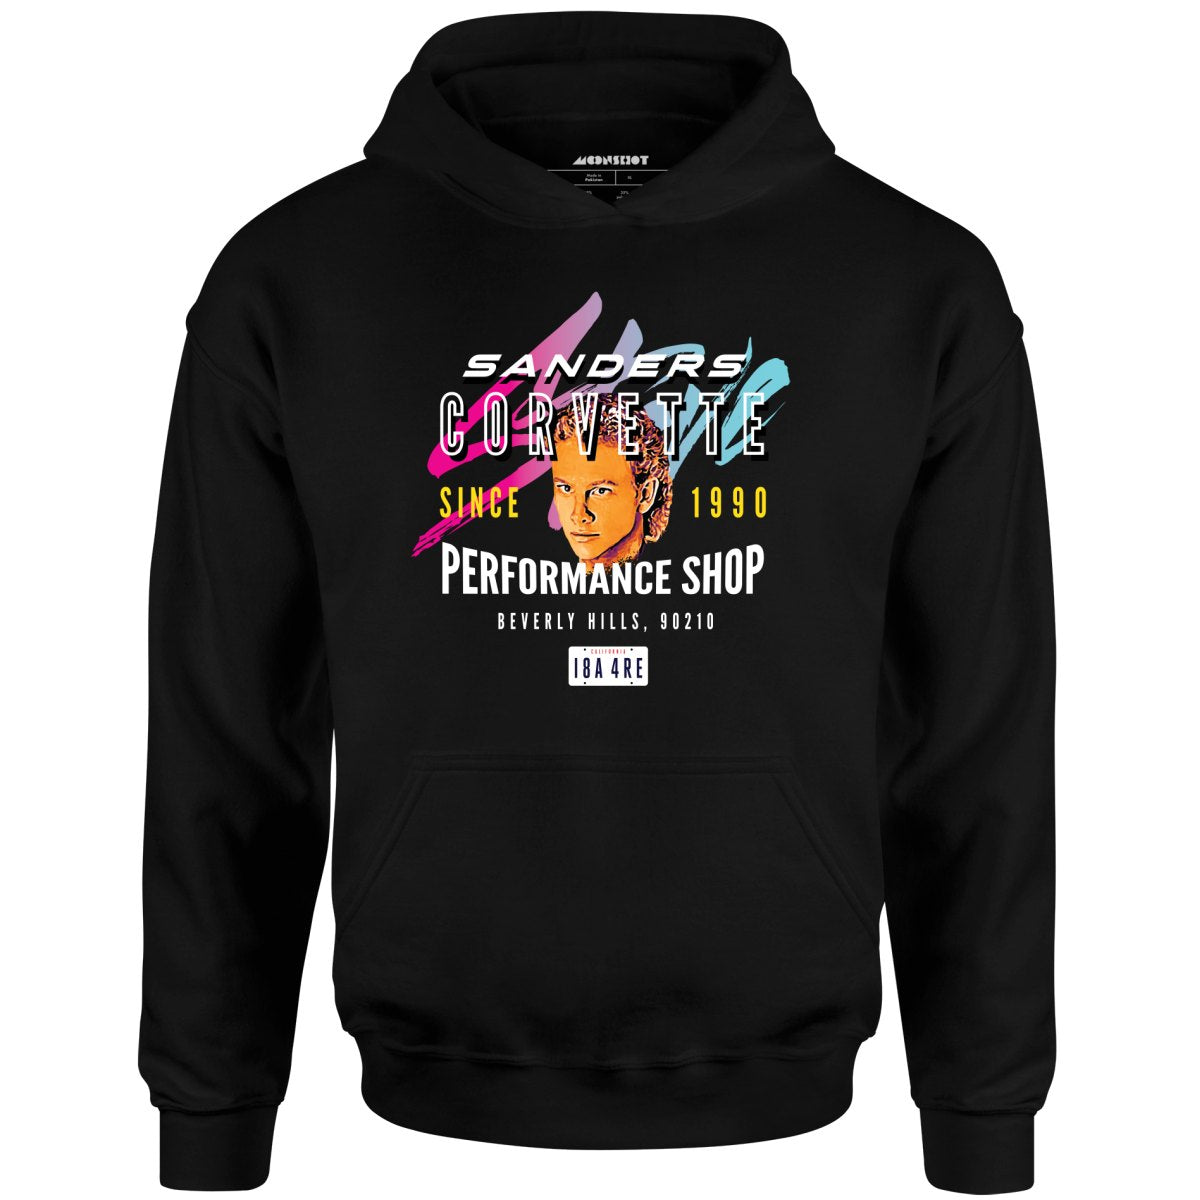 Steve Sanders Corvette Performance Shop - 90210 - Unisex Hoodie